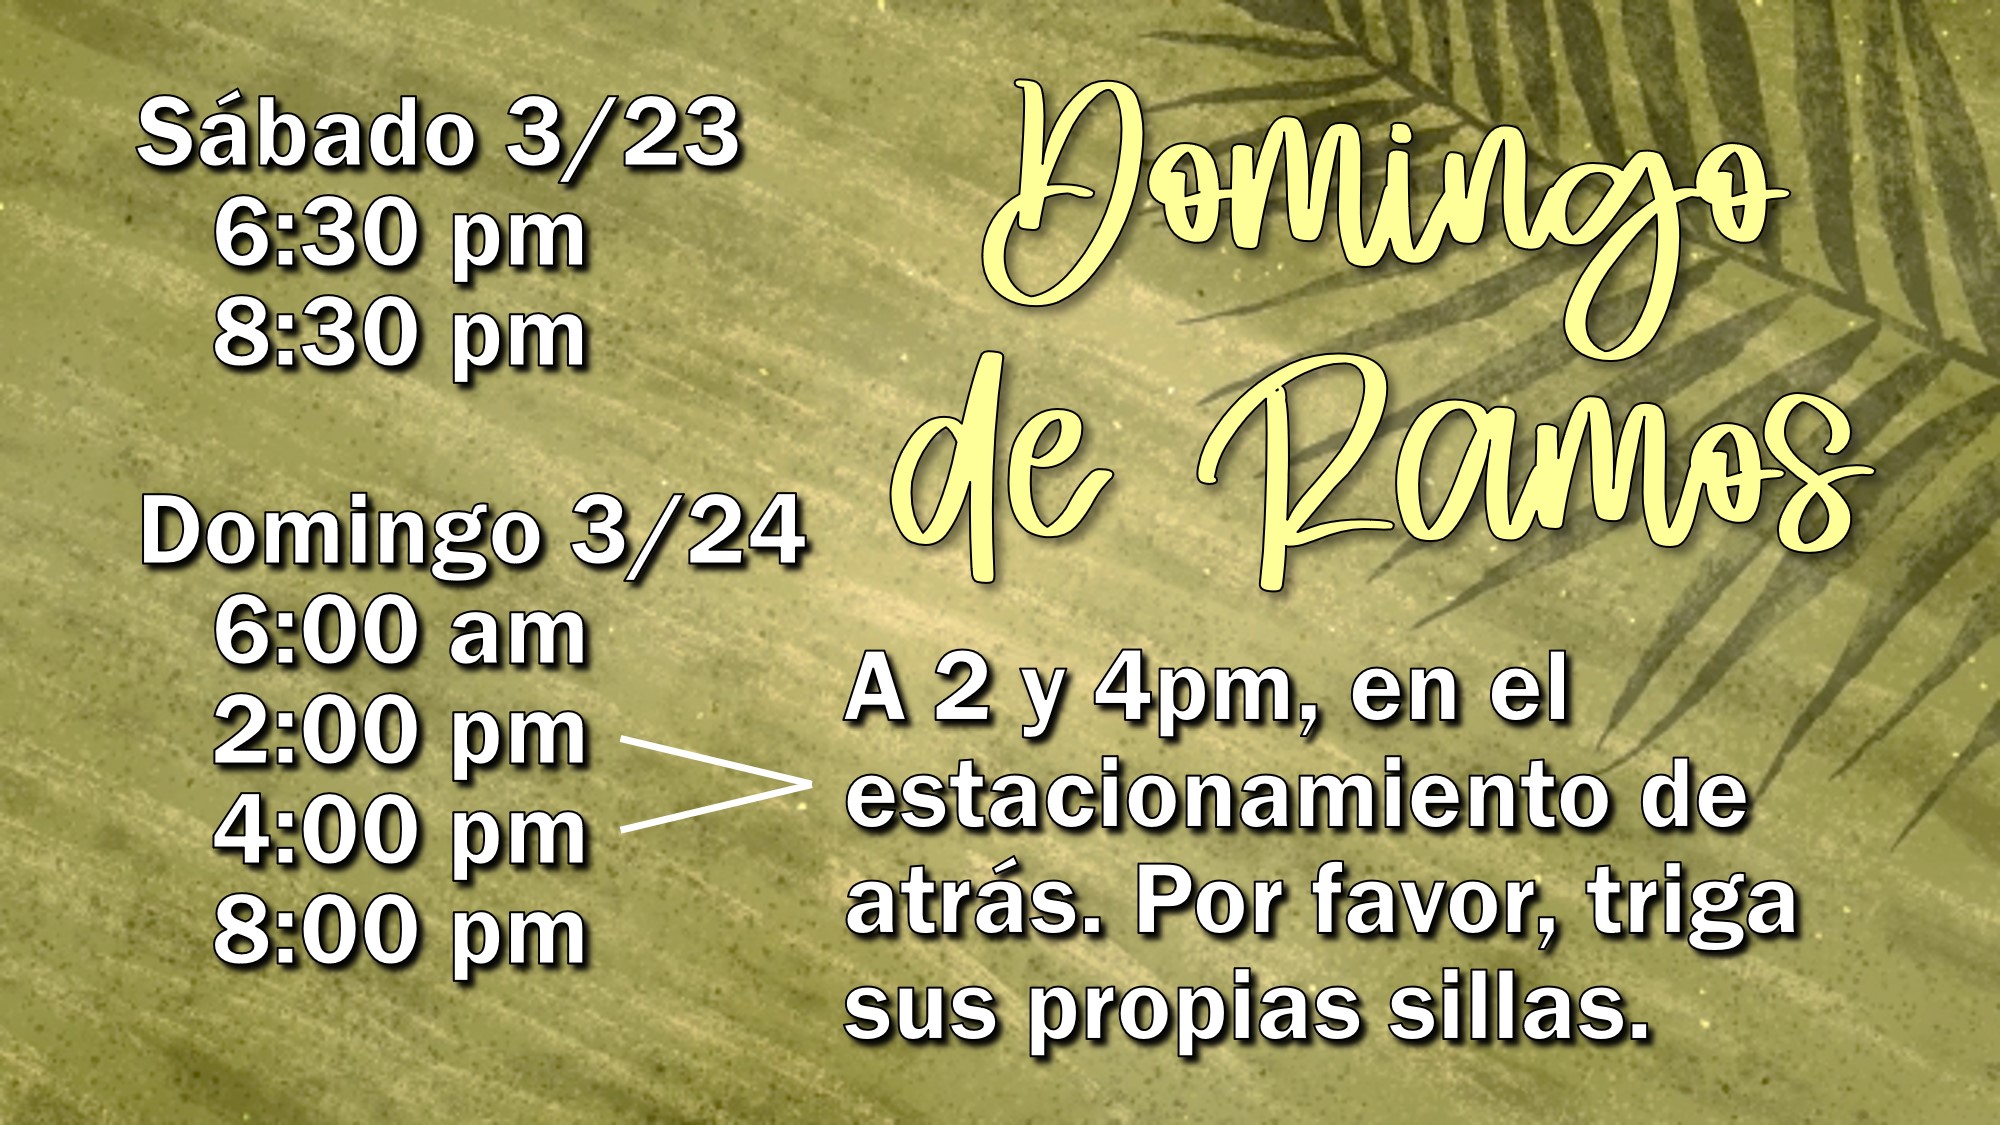 Palm Sunday Mass Times - Spanish